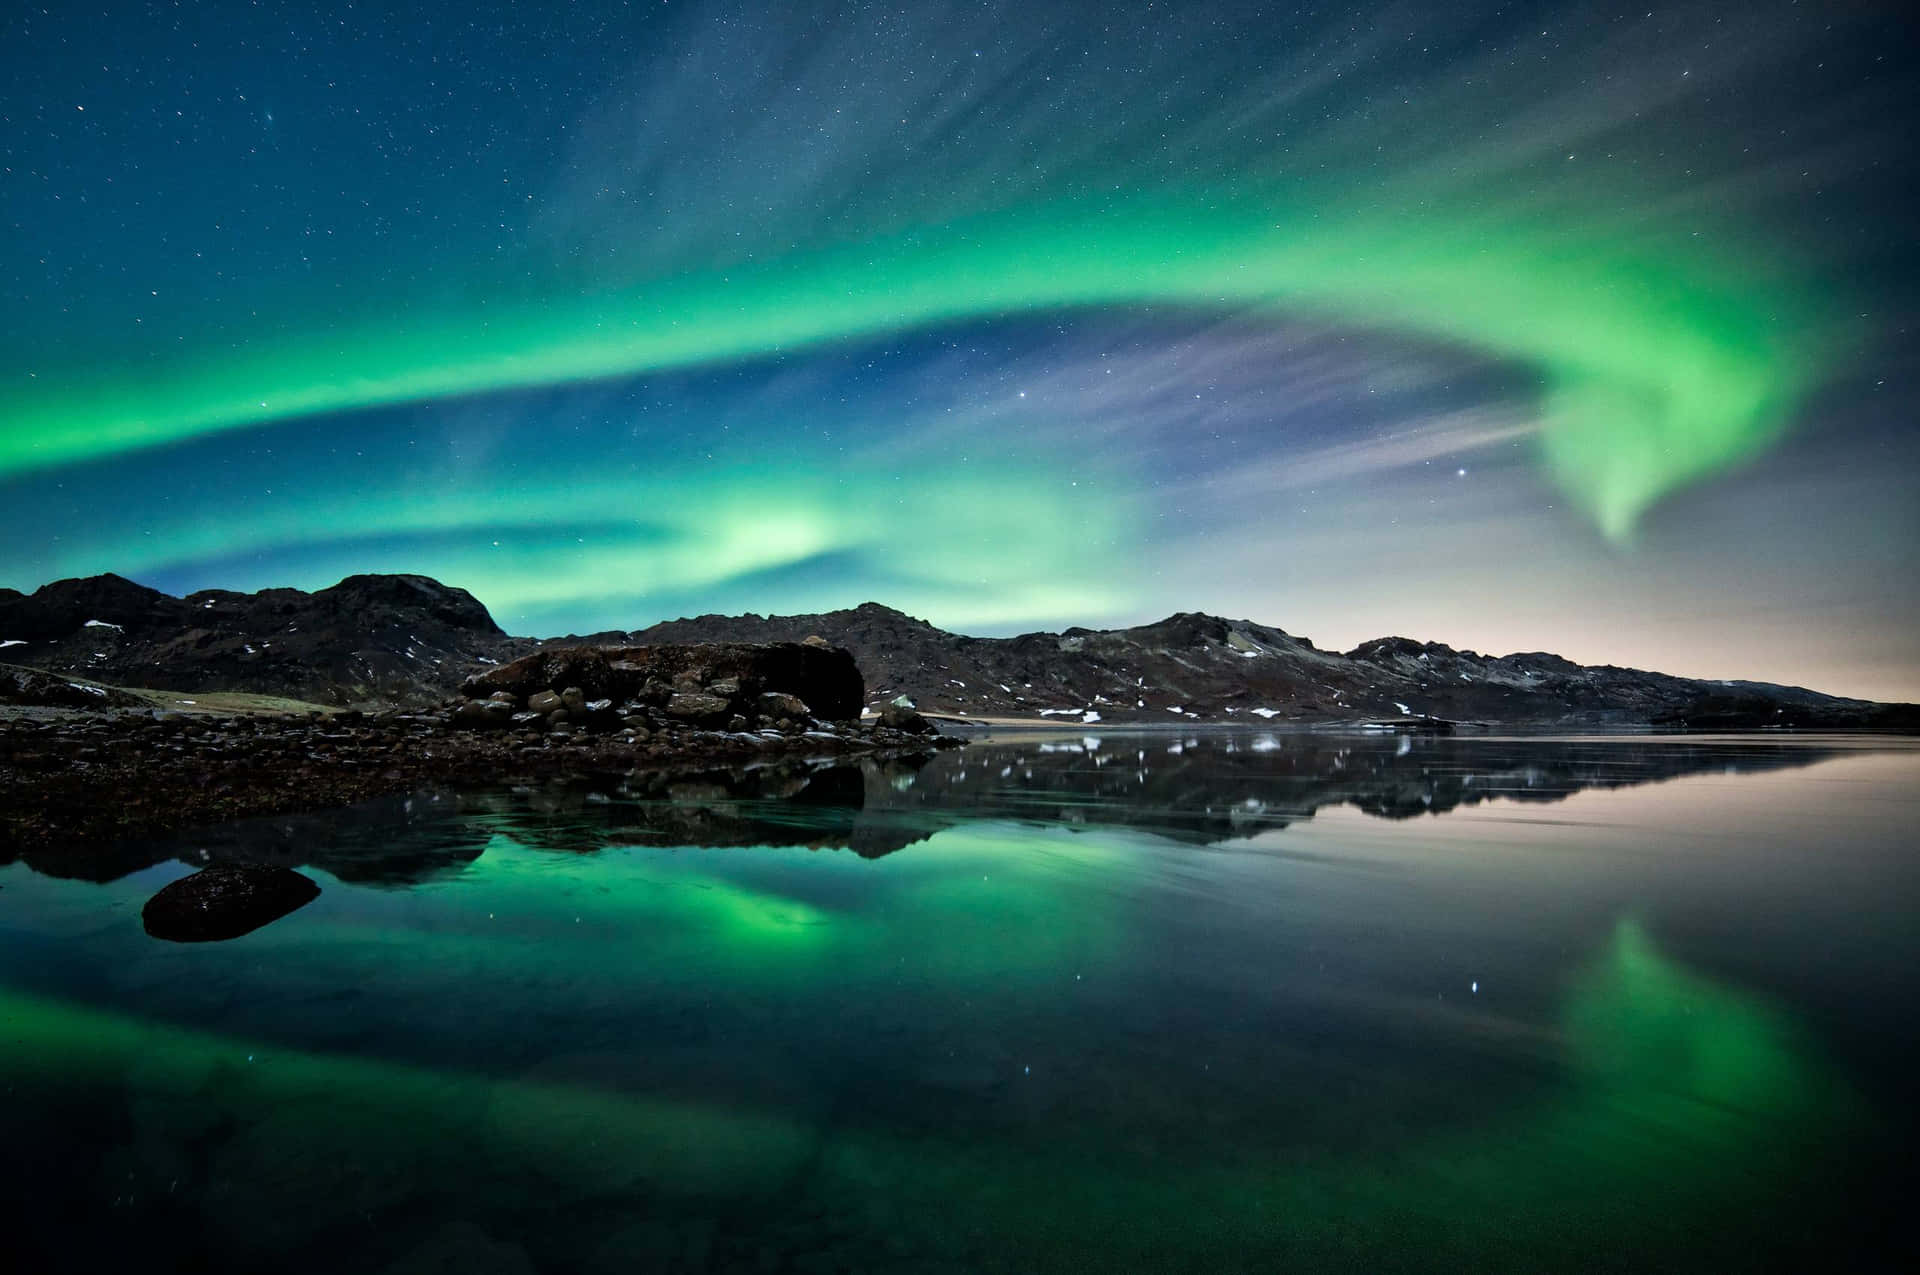 Enchanting Aurora Borealis Display Over a Tranquil Lake Wallpaper